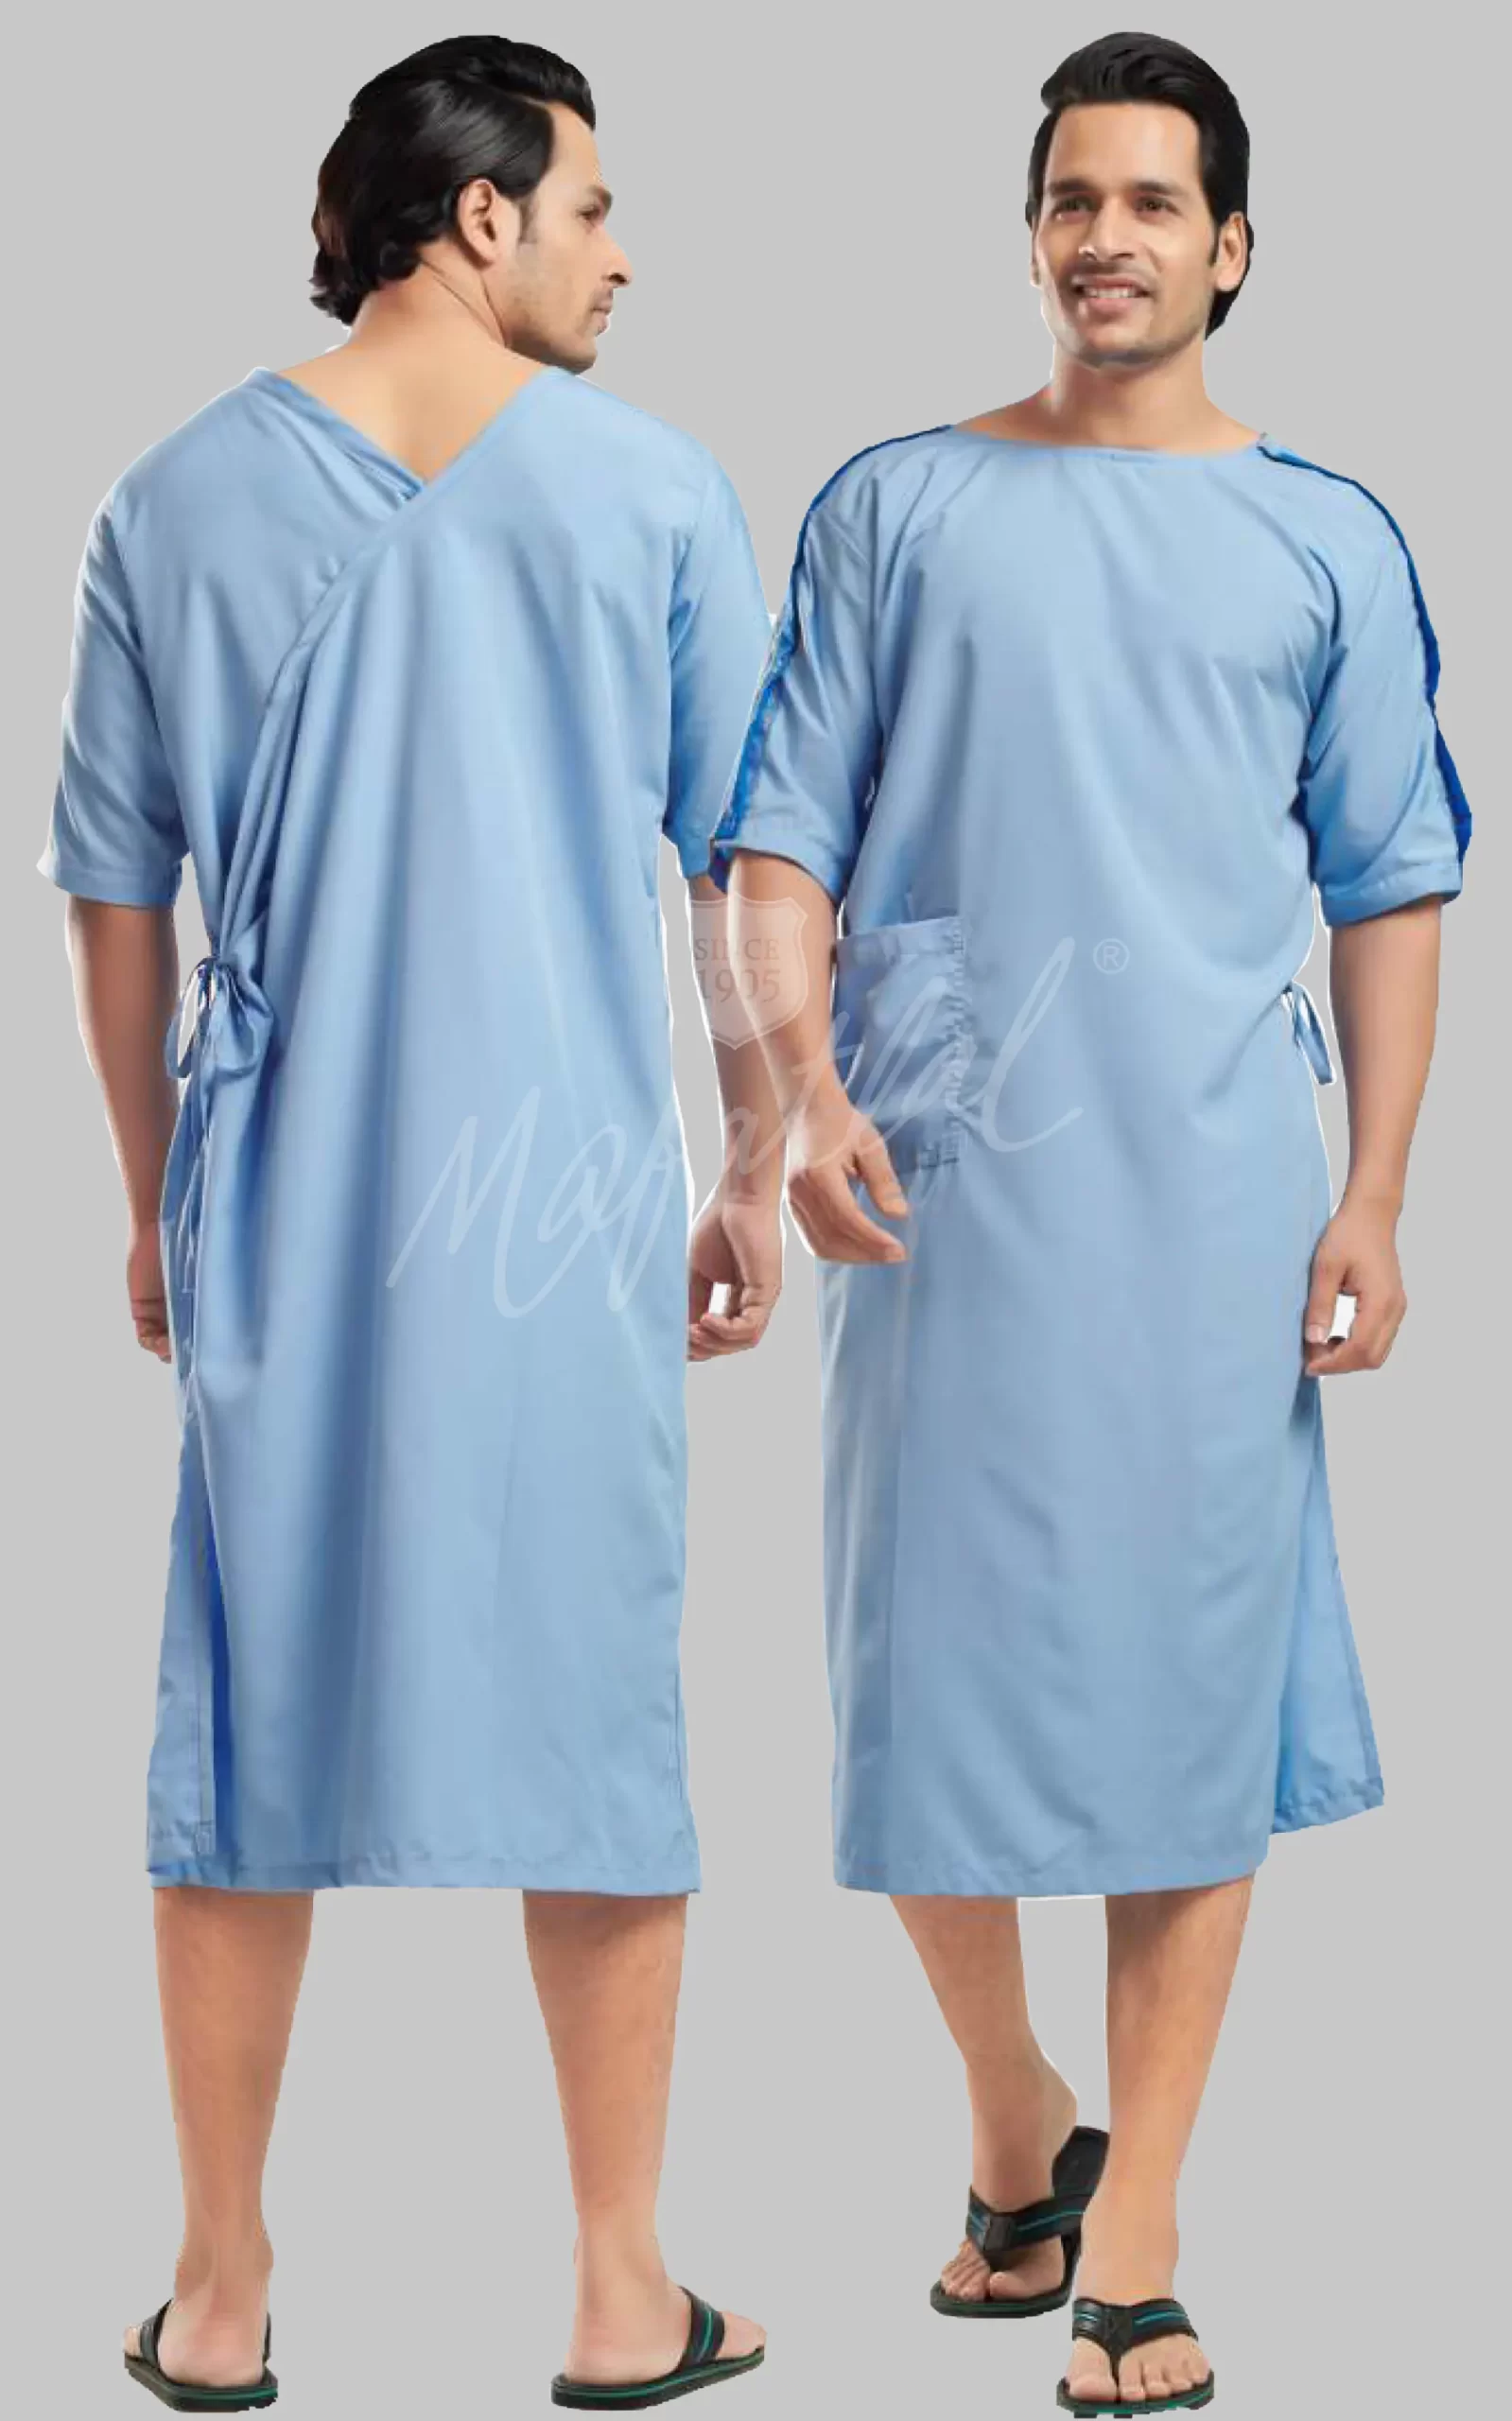 uniform-hospital-male-patient-blue